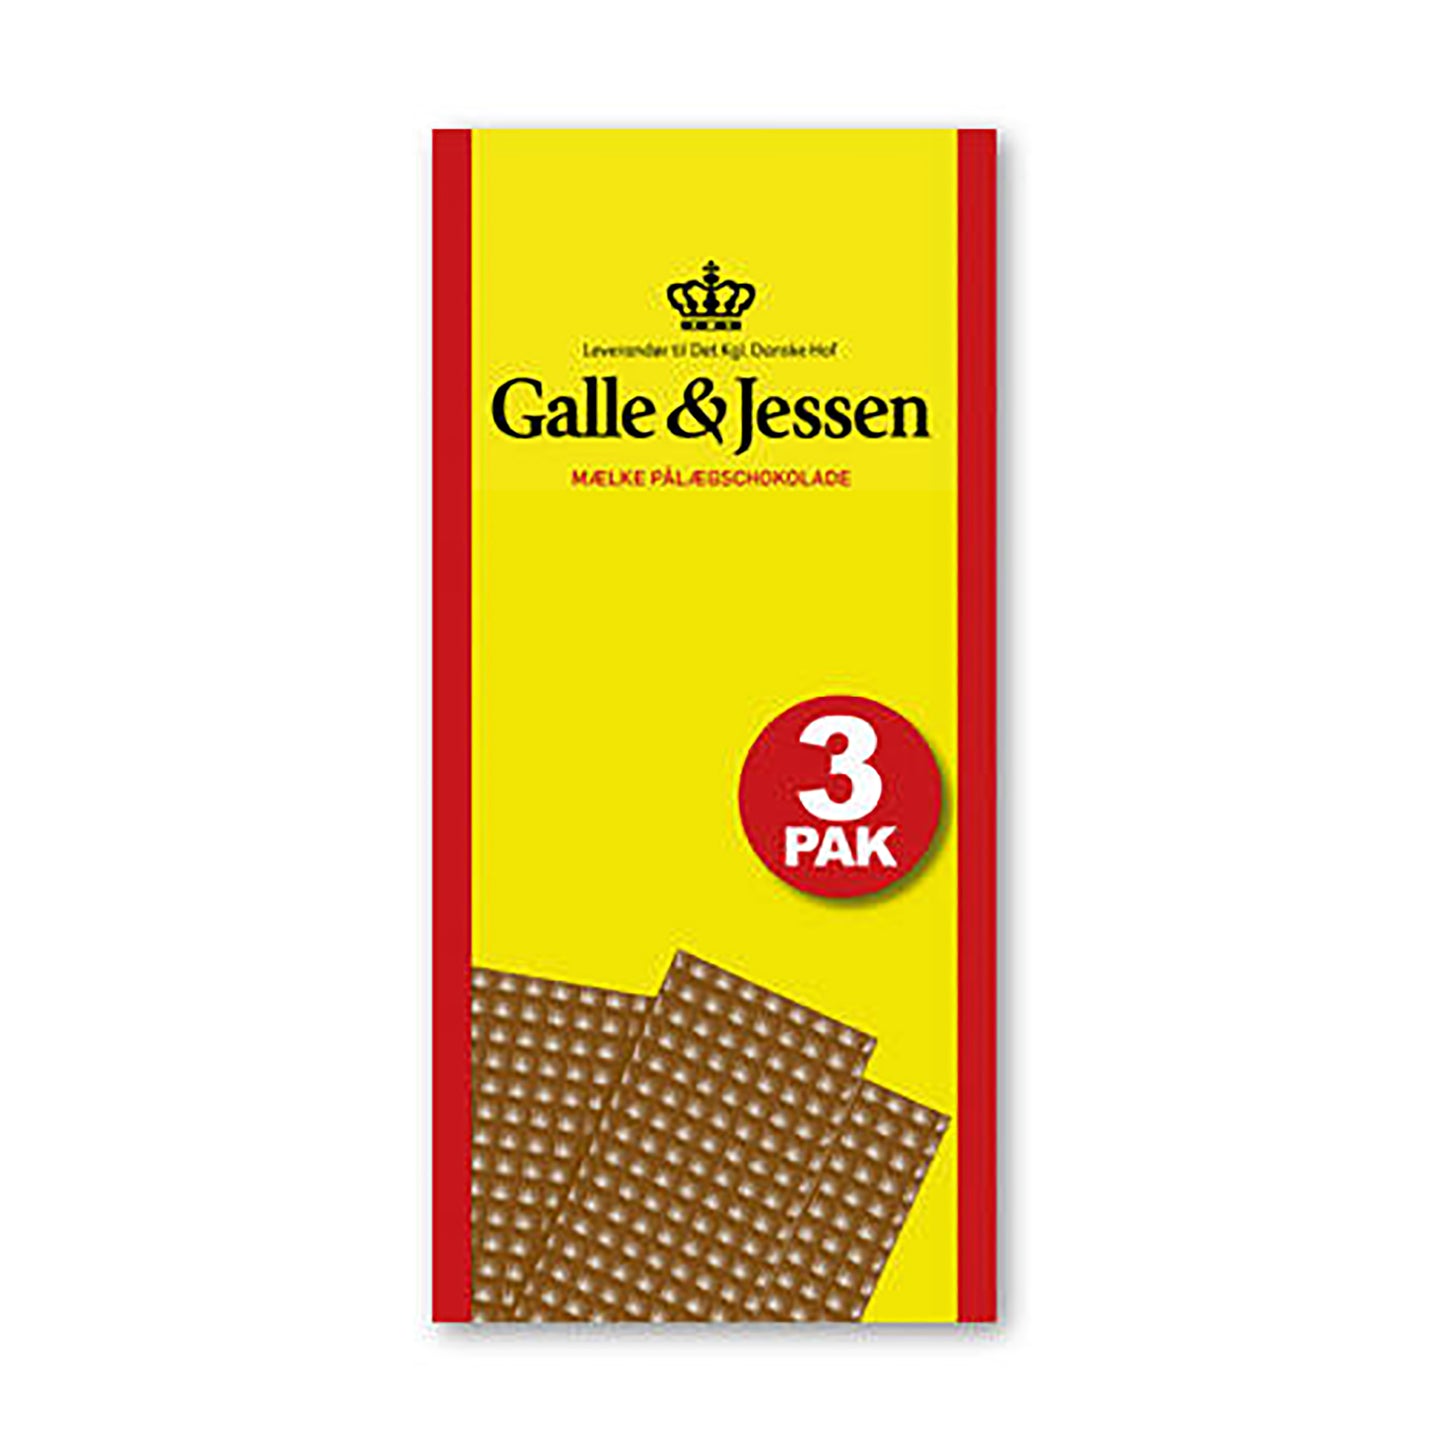 Pålægsshokolade Lys Galle og Jessen  / plaquettes de chocolat au lait 3 x 108 g net